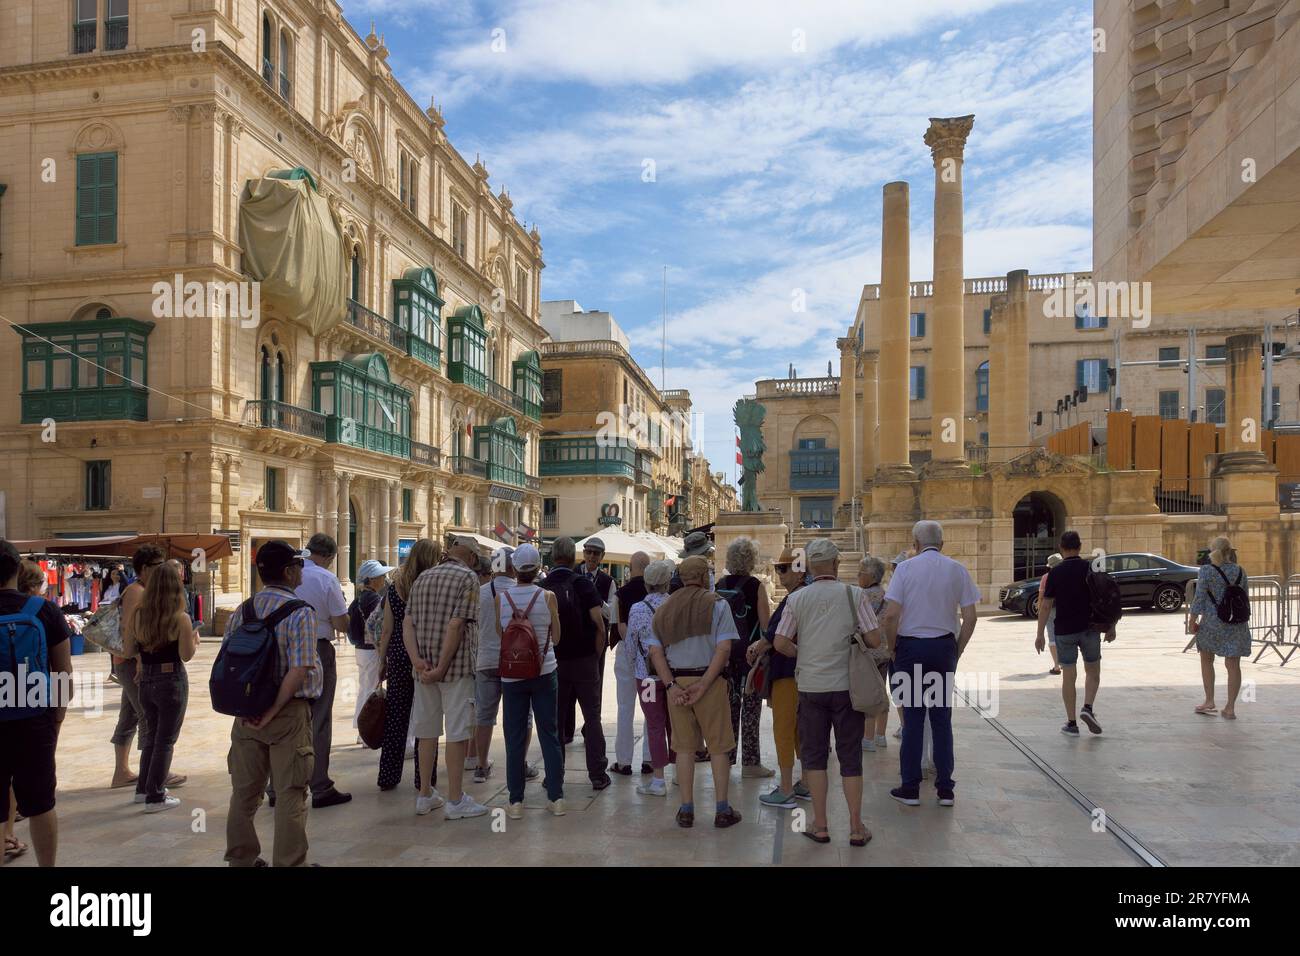 Gruppenreisen halten im Schatten, um den Erläuterungen des Reiseleiters in der Altstadt von Valletta, Malta, zu lauschen Stockfoto